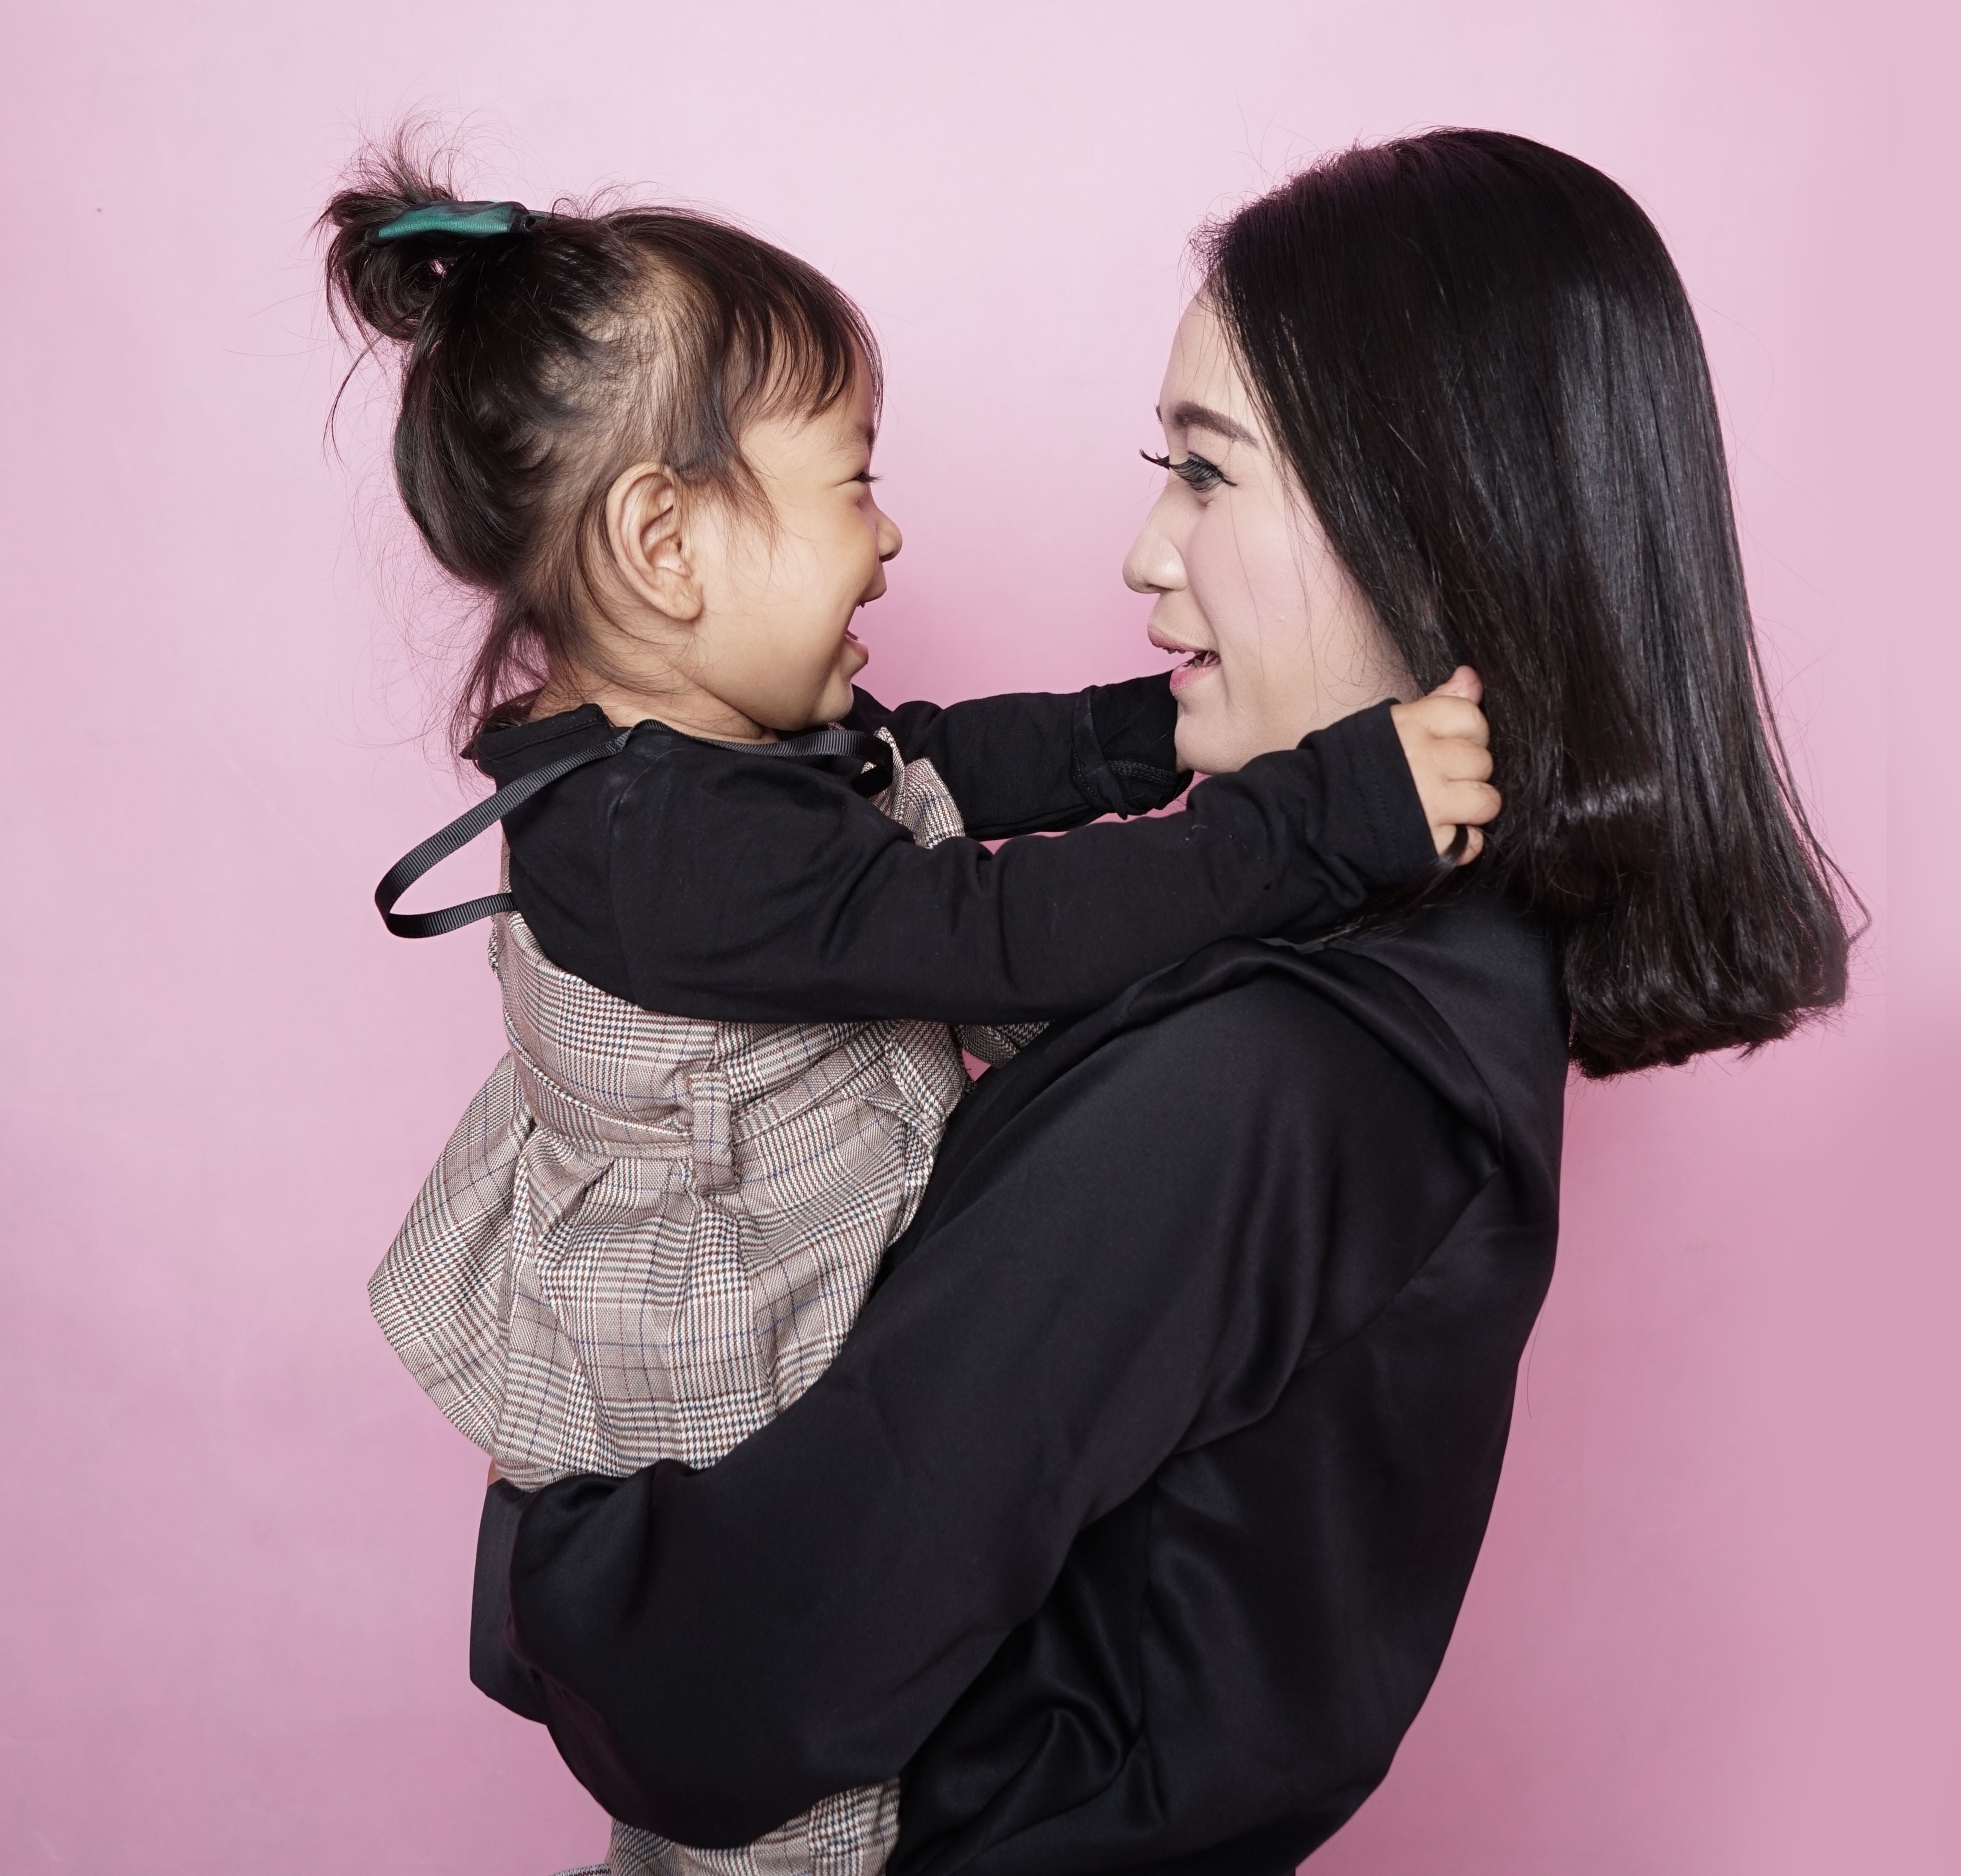 Vrouw met Aziatische roots houdt haar dochter in haar armen